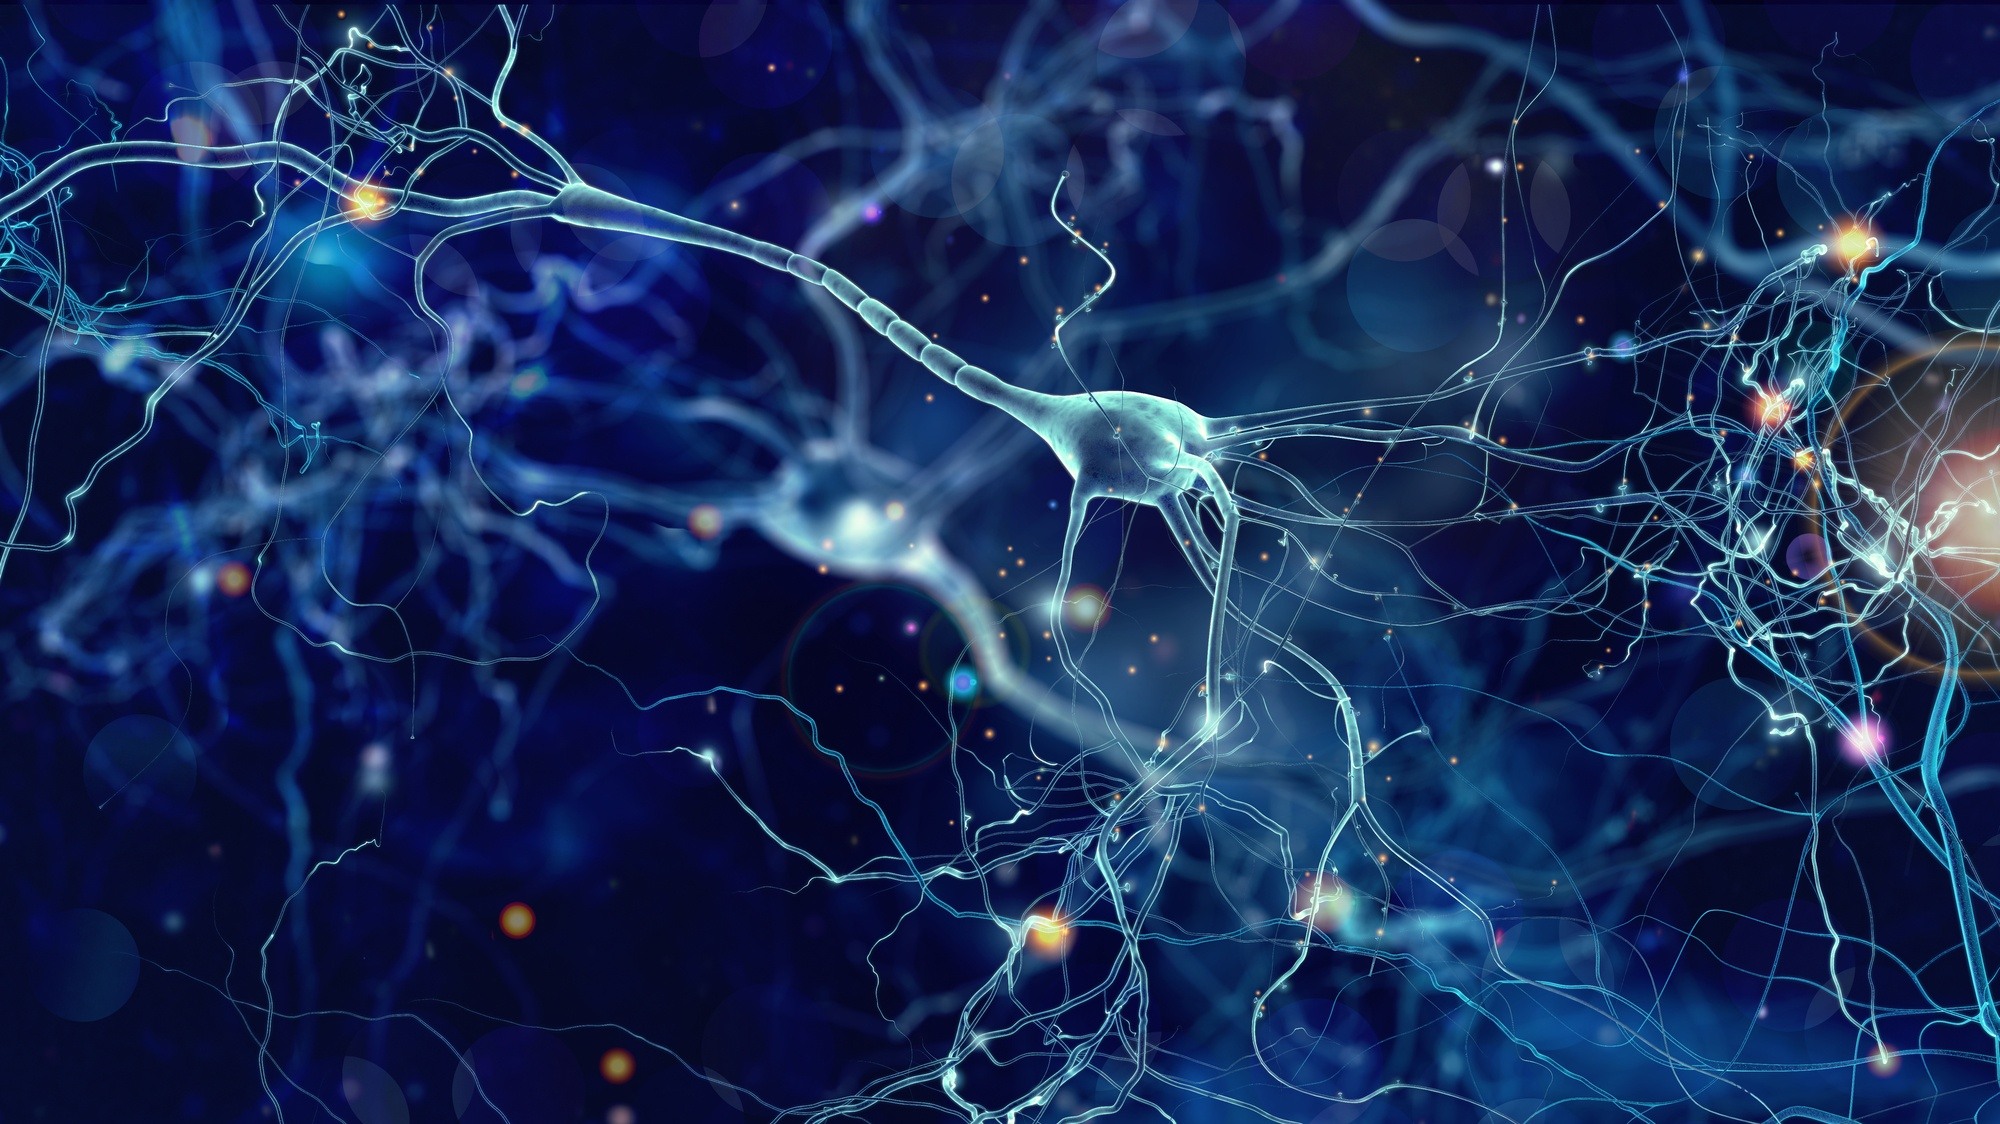 neuron cells 3D illustration